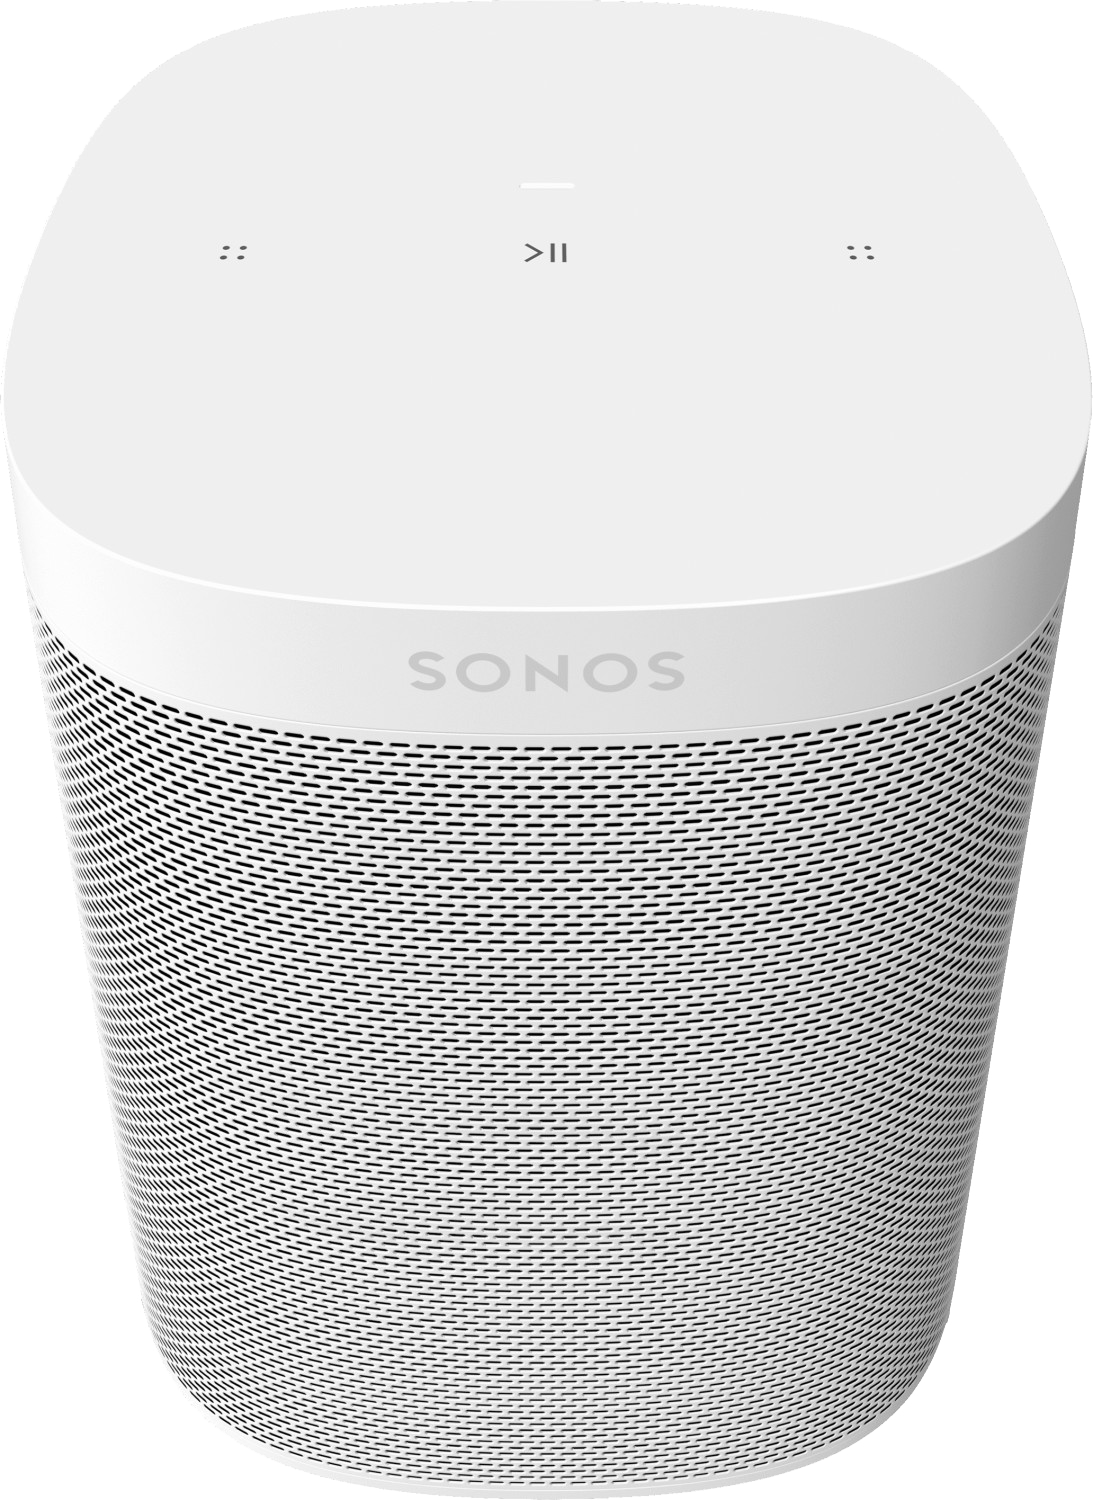 Sonos One SL Lautsprecher Smart Speaker weiß - Ohne Vertrag